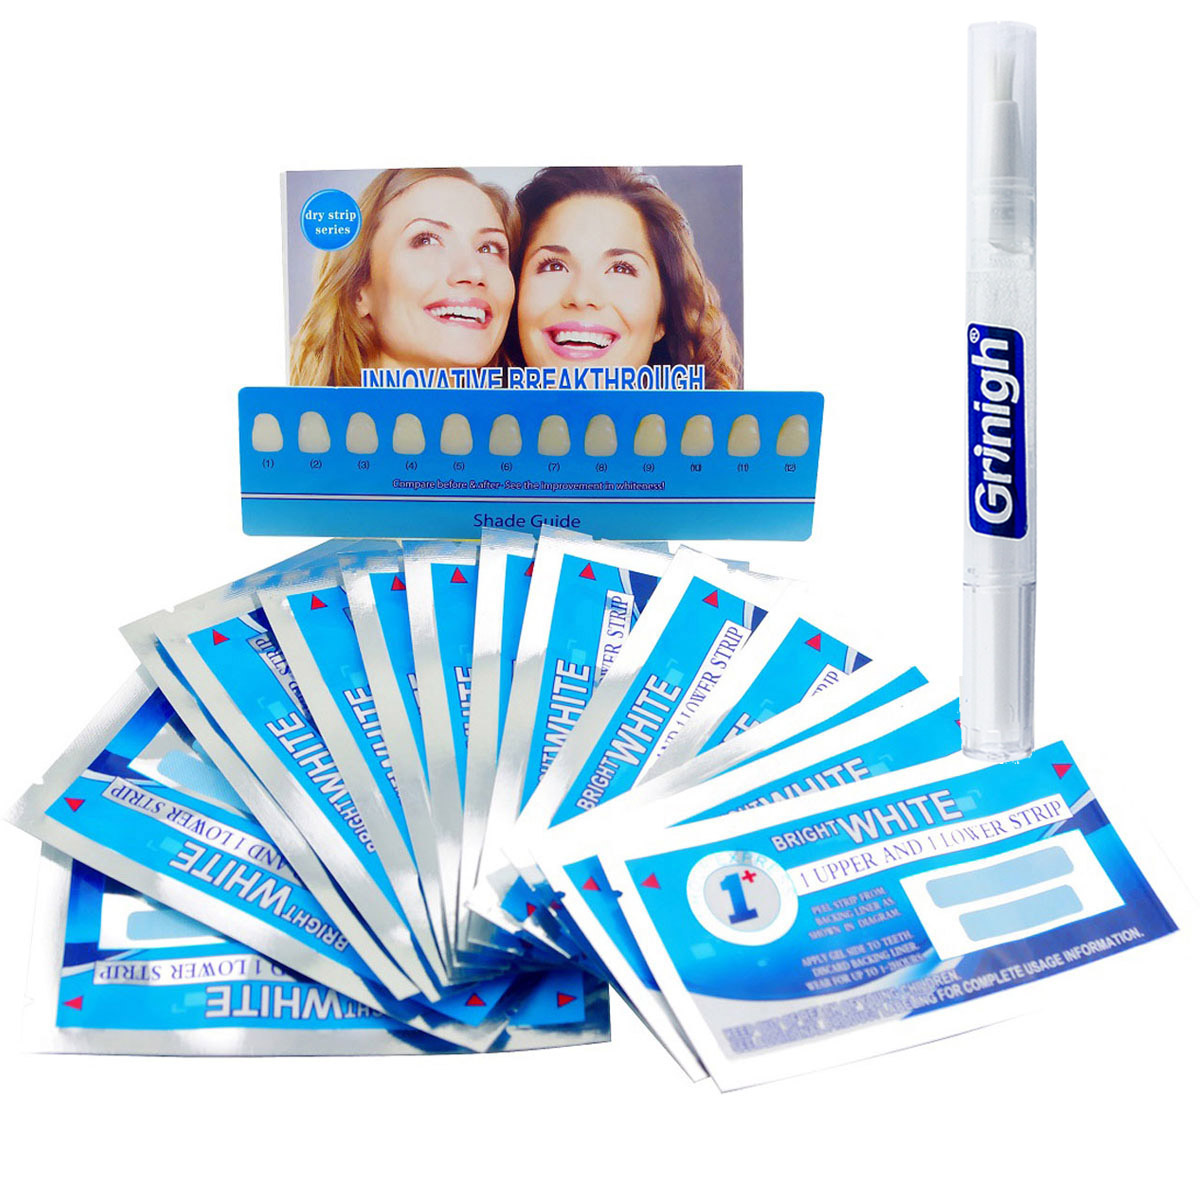 Grin365 Ultra dents fines bandes blanchissantes avec saveur menthe fraîche - 7 Traitement de jour Cours